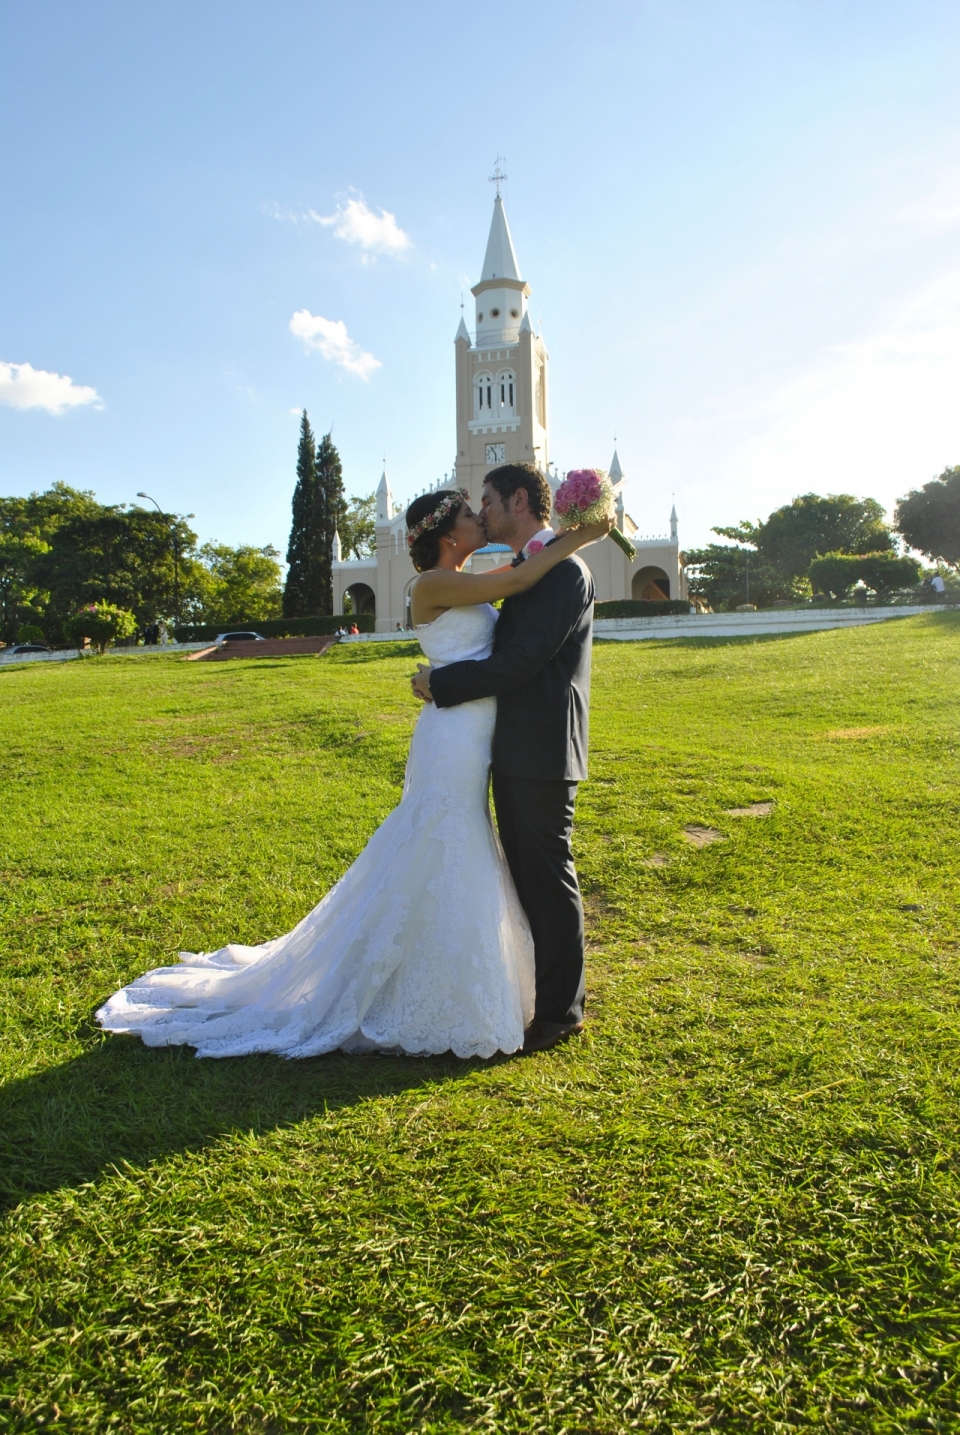 一对幸福的夫妻草地上拍摄婚纱照纪实摄影